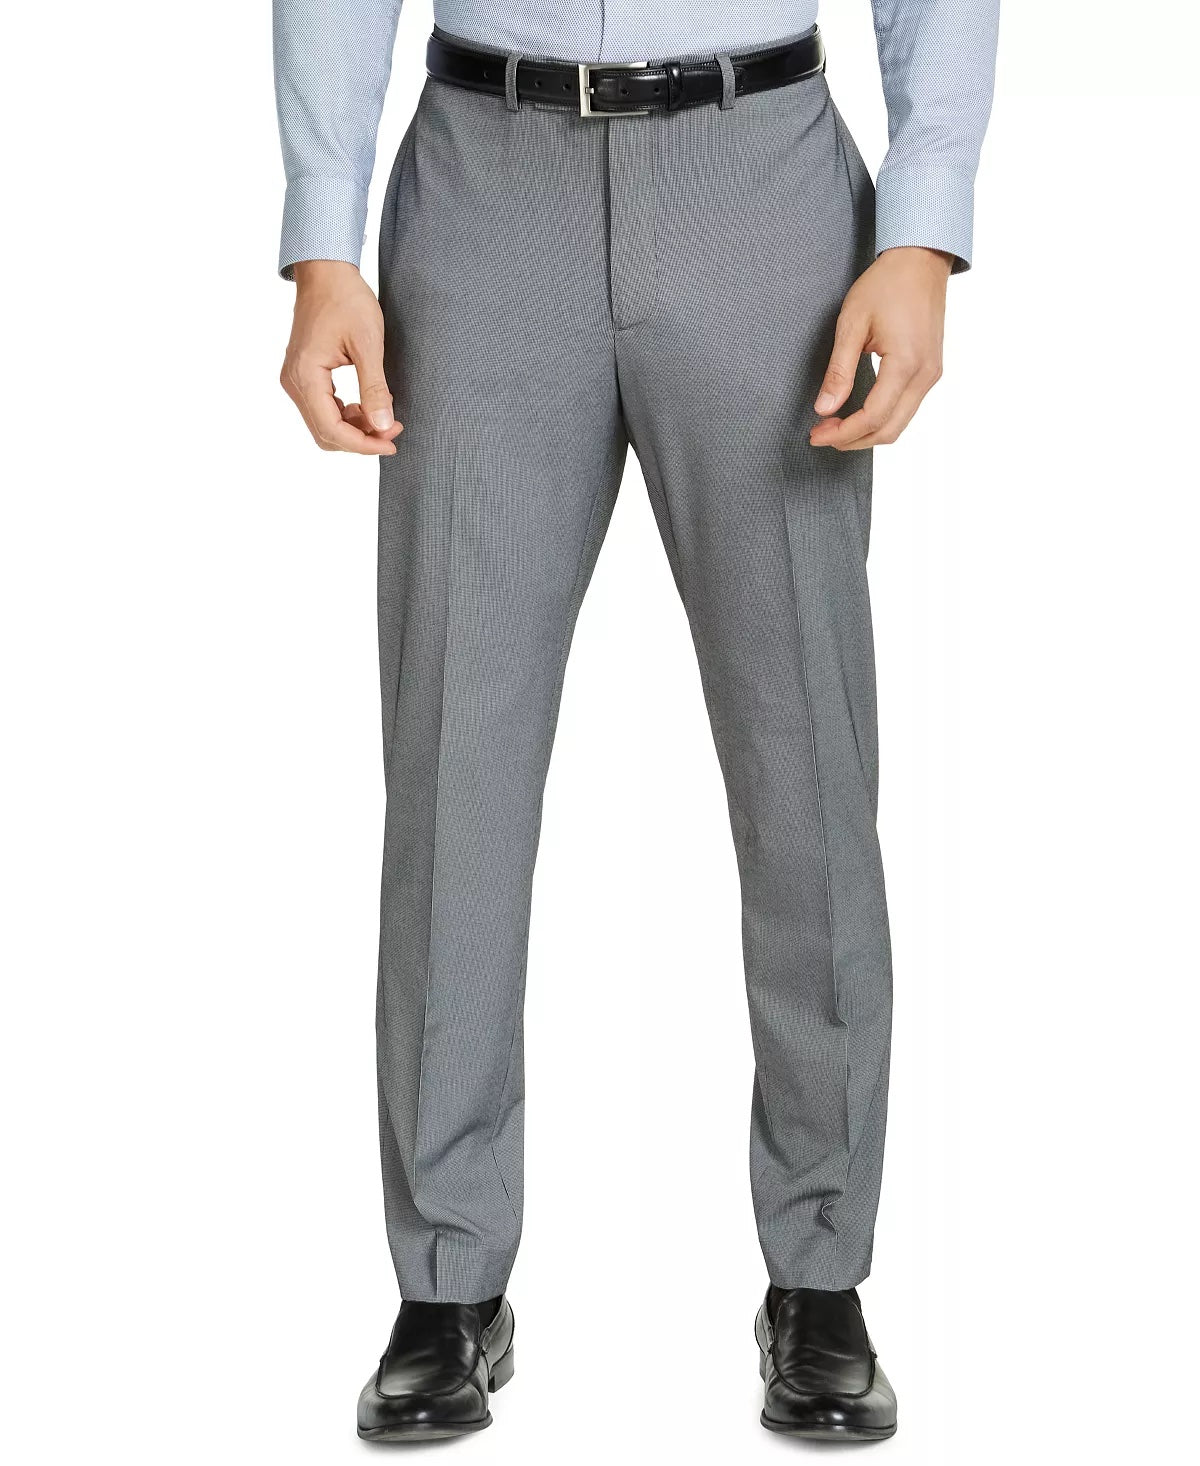 VAN HEUSEN Men's Flex Slim Fit Suit Pant 37 x 30 Black / White Tic Flat Pant